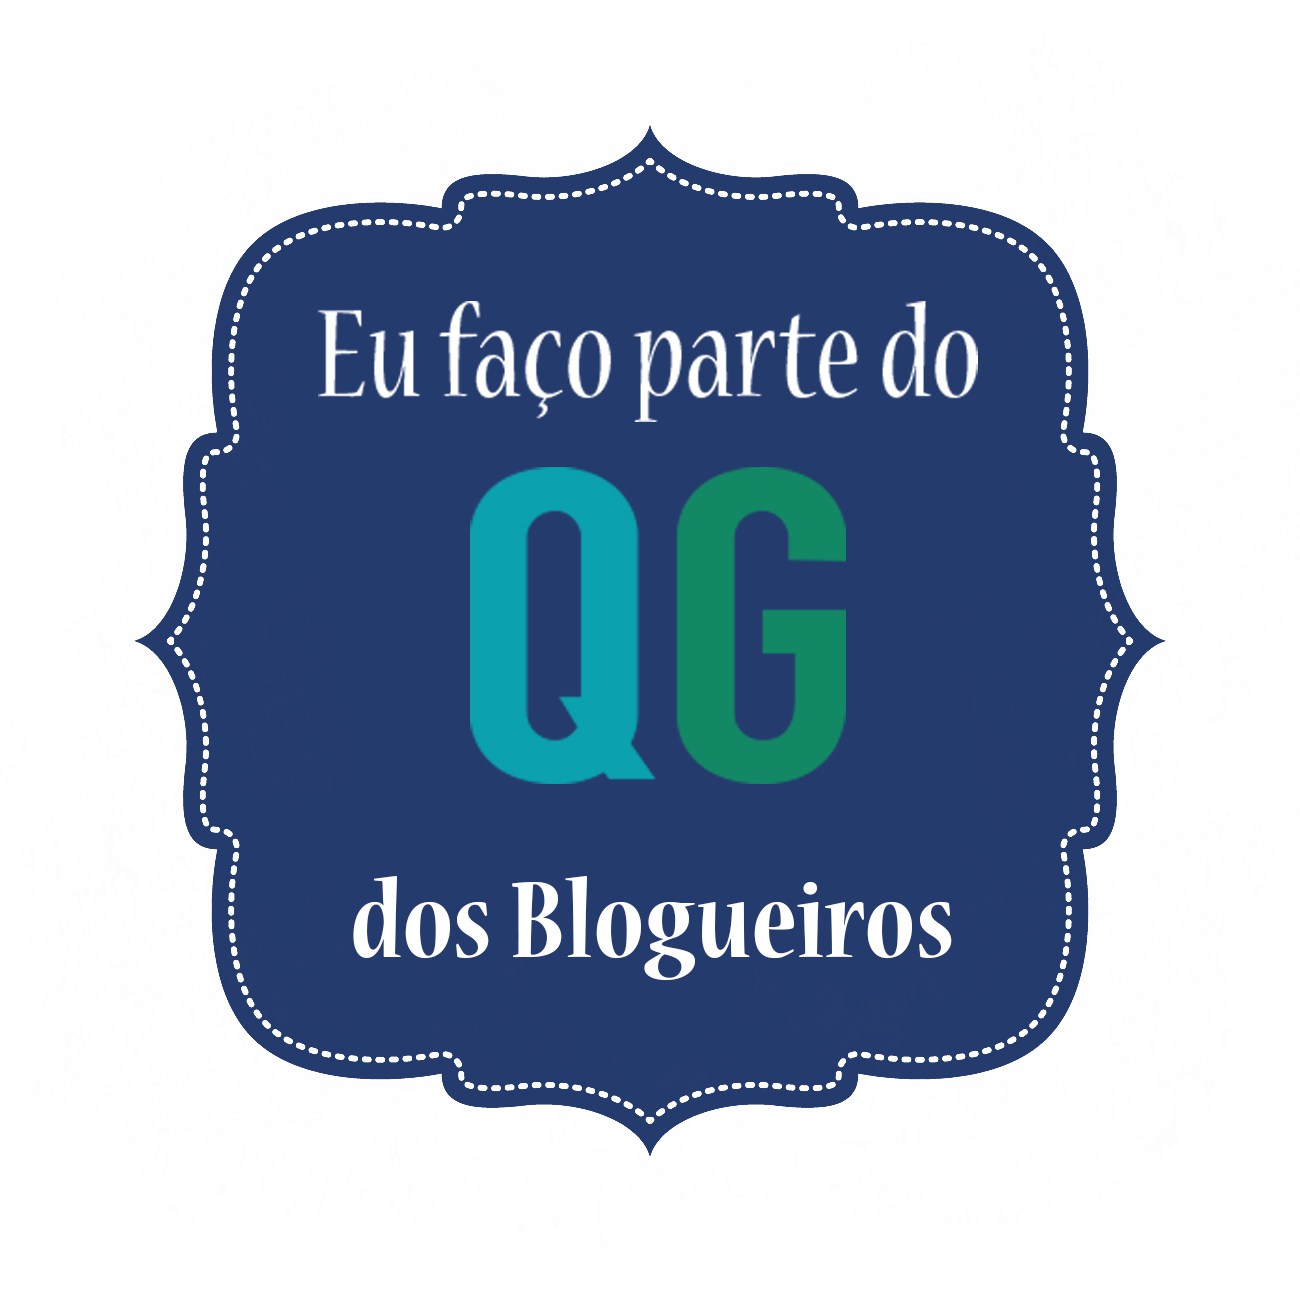 QG dos Blogueiros